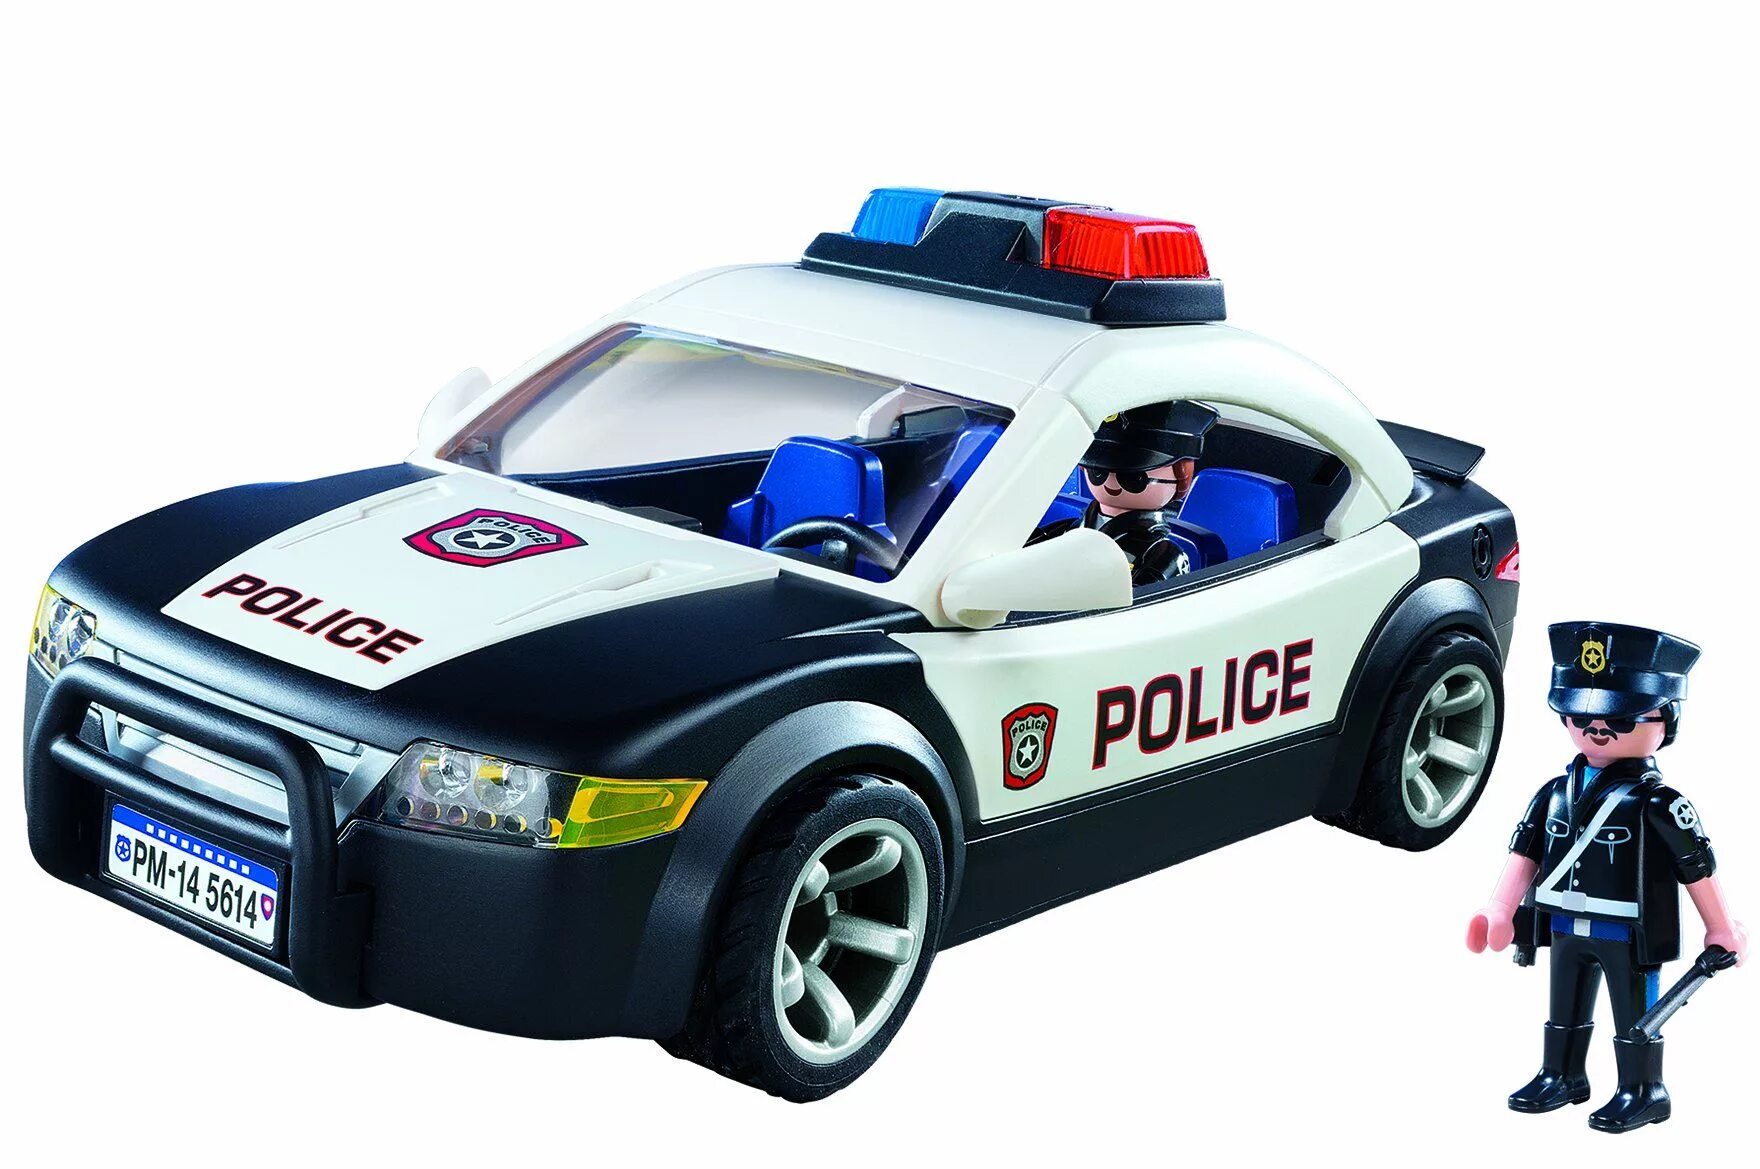 Включи пинг полицейская машина. Плеймобил полицейский автомобиль 5673. Плеймобиль полиция полиц маш. Playmobil Polizei машинка полиция. Playmobil City Action Police car 5673.